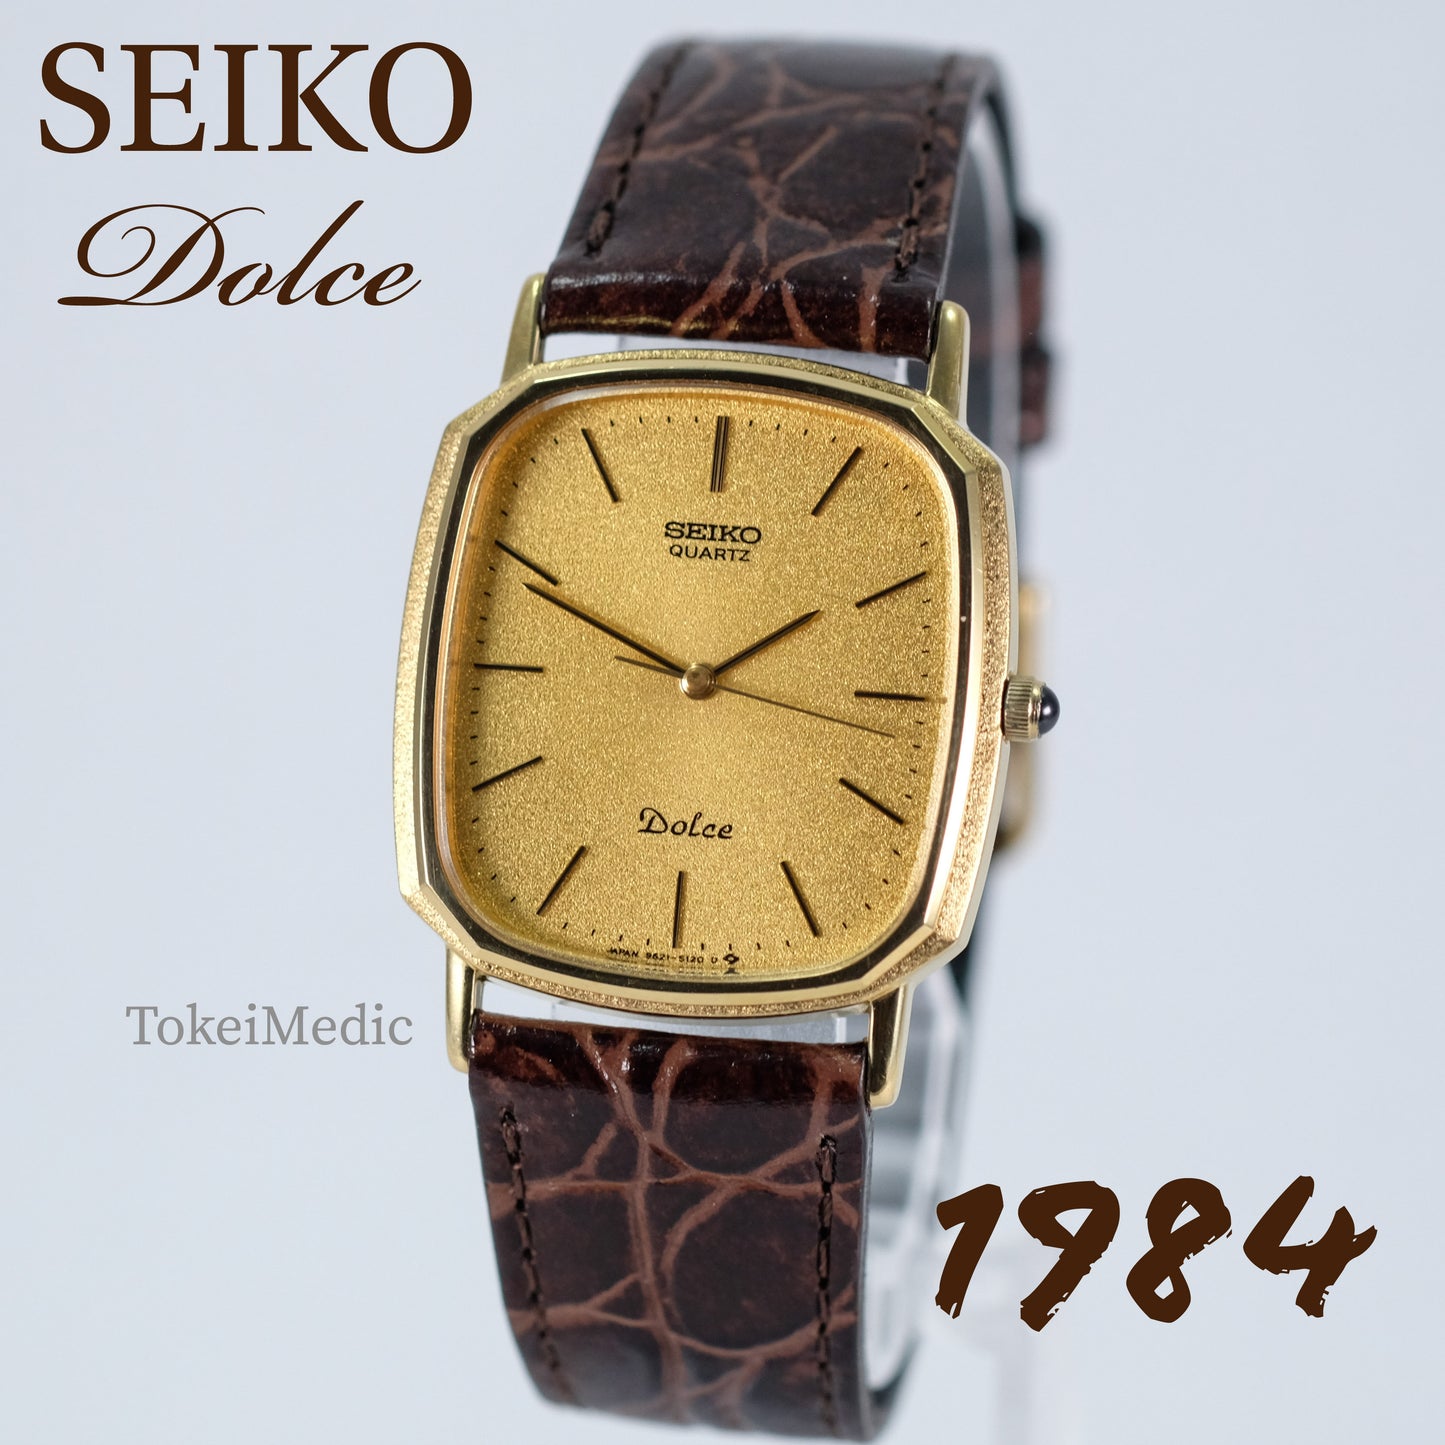 1984 Seiko Dolce 9521-5120